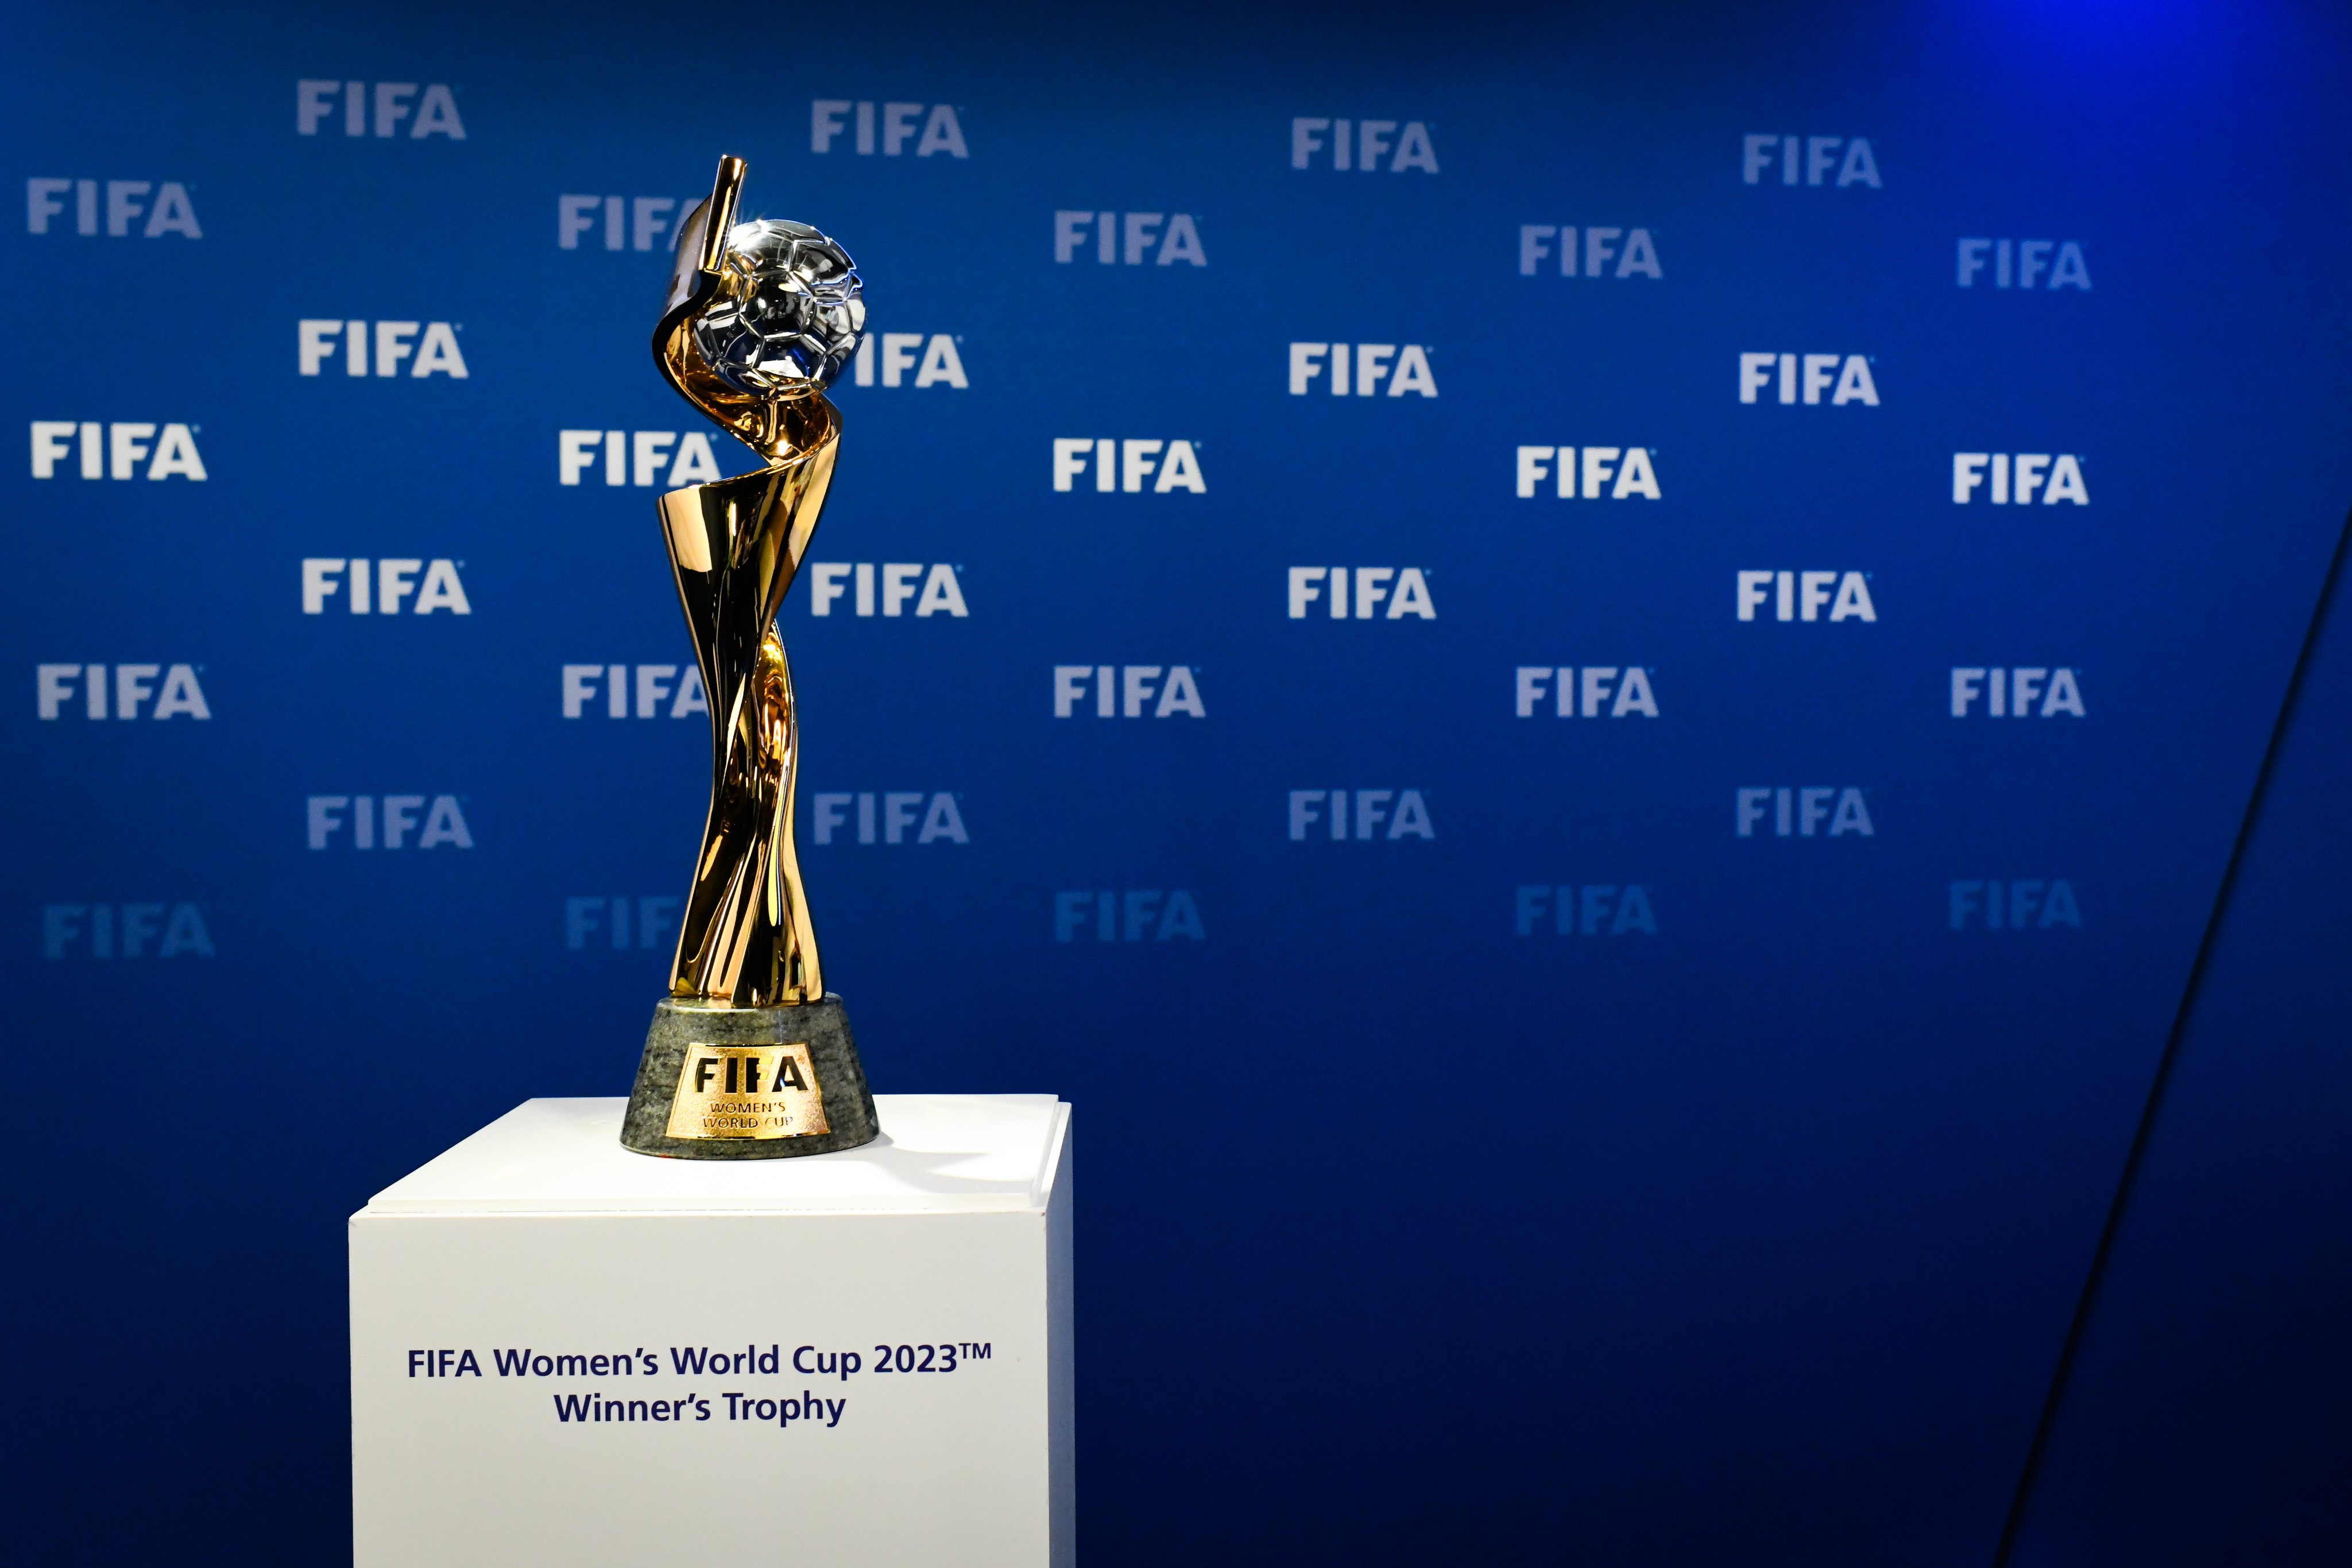 FIFA.com en español on X: "Australia🇦🇺 y Nueva Zelanda🇳🇿 albergarán la Copa  Mundial Femenina de la FIFA 2023™ #FIFAWWC ➡️ https://t.co/dyPi6irOdq  https://t.co/WzMeyzv7qT" / X